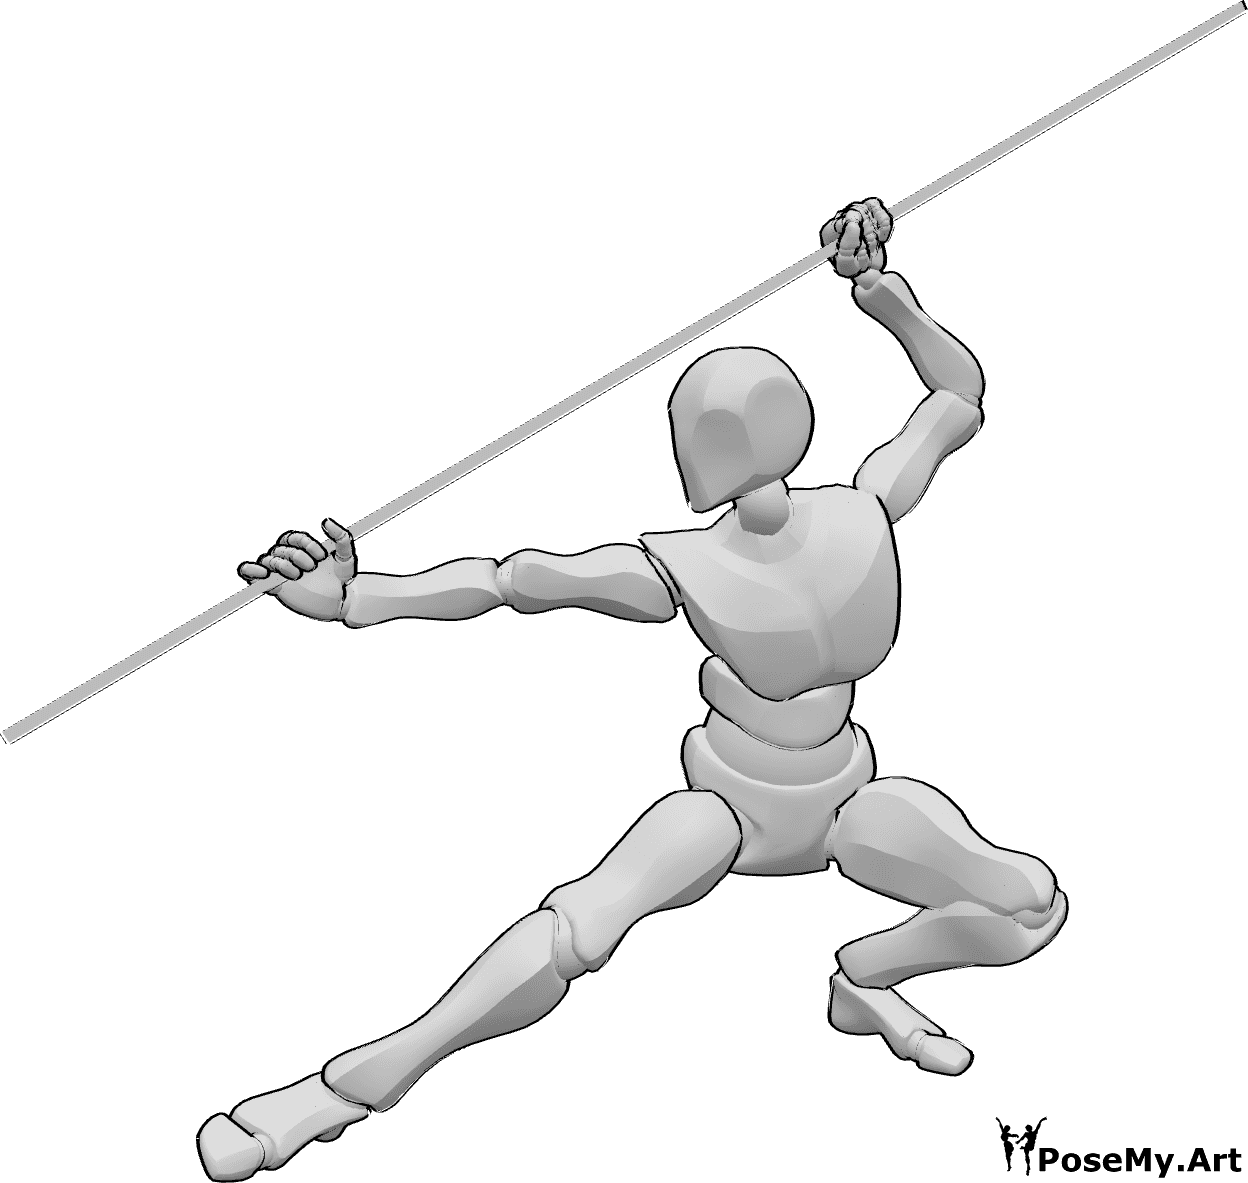 Referencia de poses- Varón sujetando bastón posa - Varón sosteniendo un bastón pose kung fu